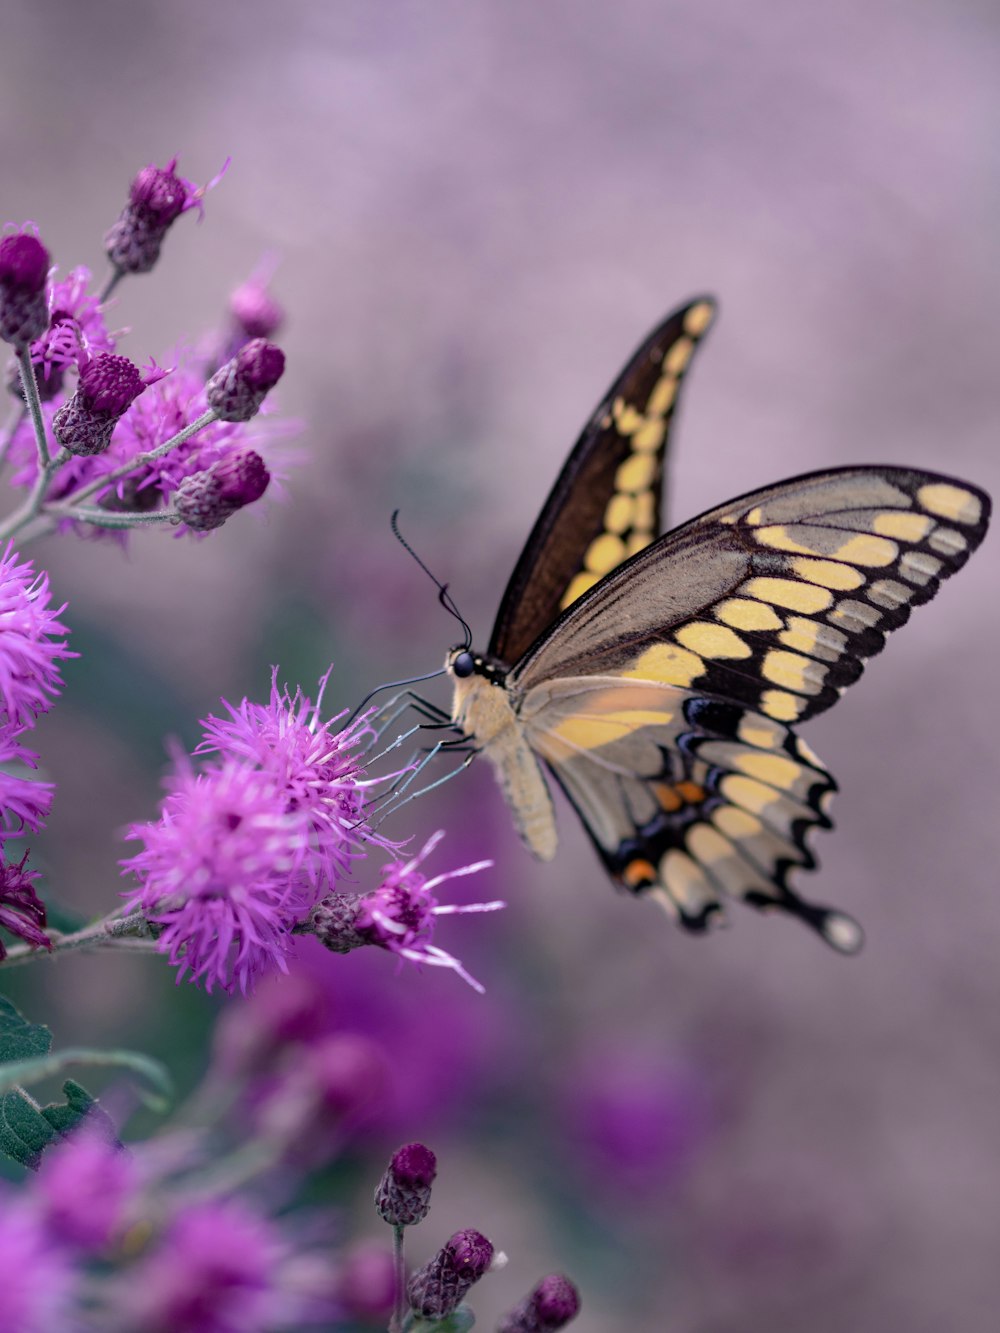 Fotografia de foco raso de borboleta amarela e preta